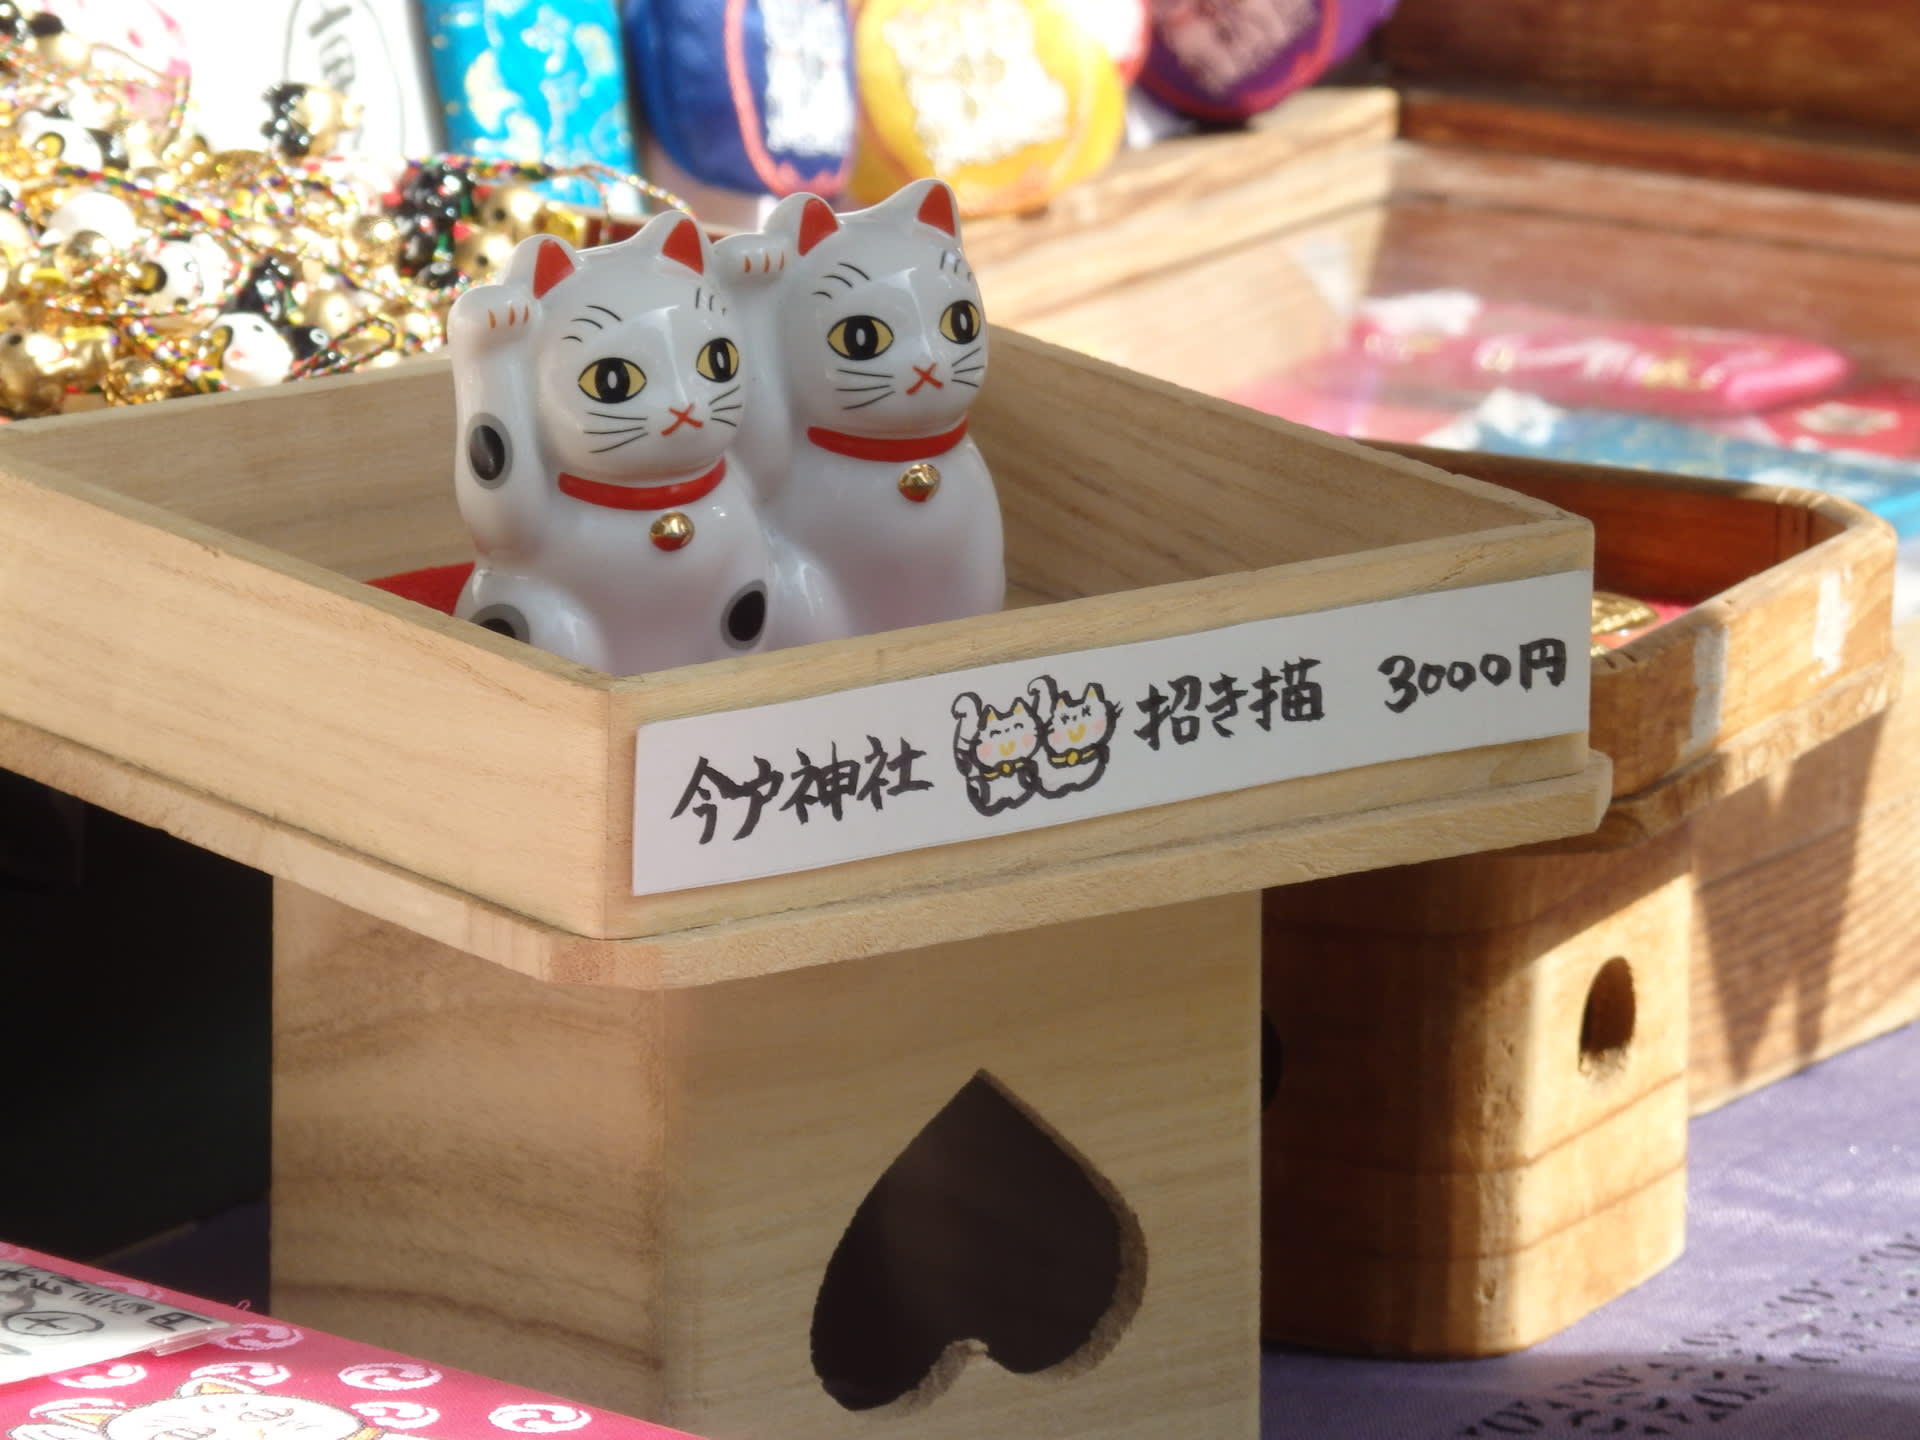 今戸 縁結びエイリアン招き猫のデザイン 東京の土人形 今戸焼 今戸人形 いまどき人形 つれづれ